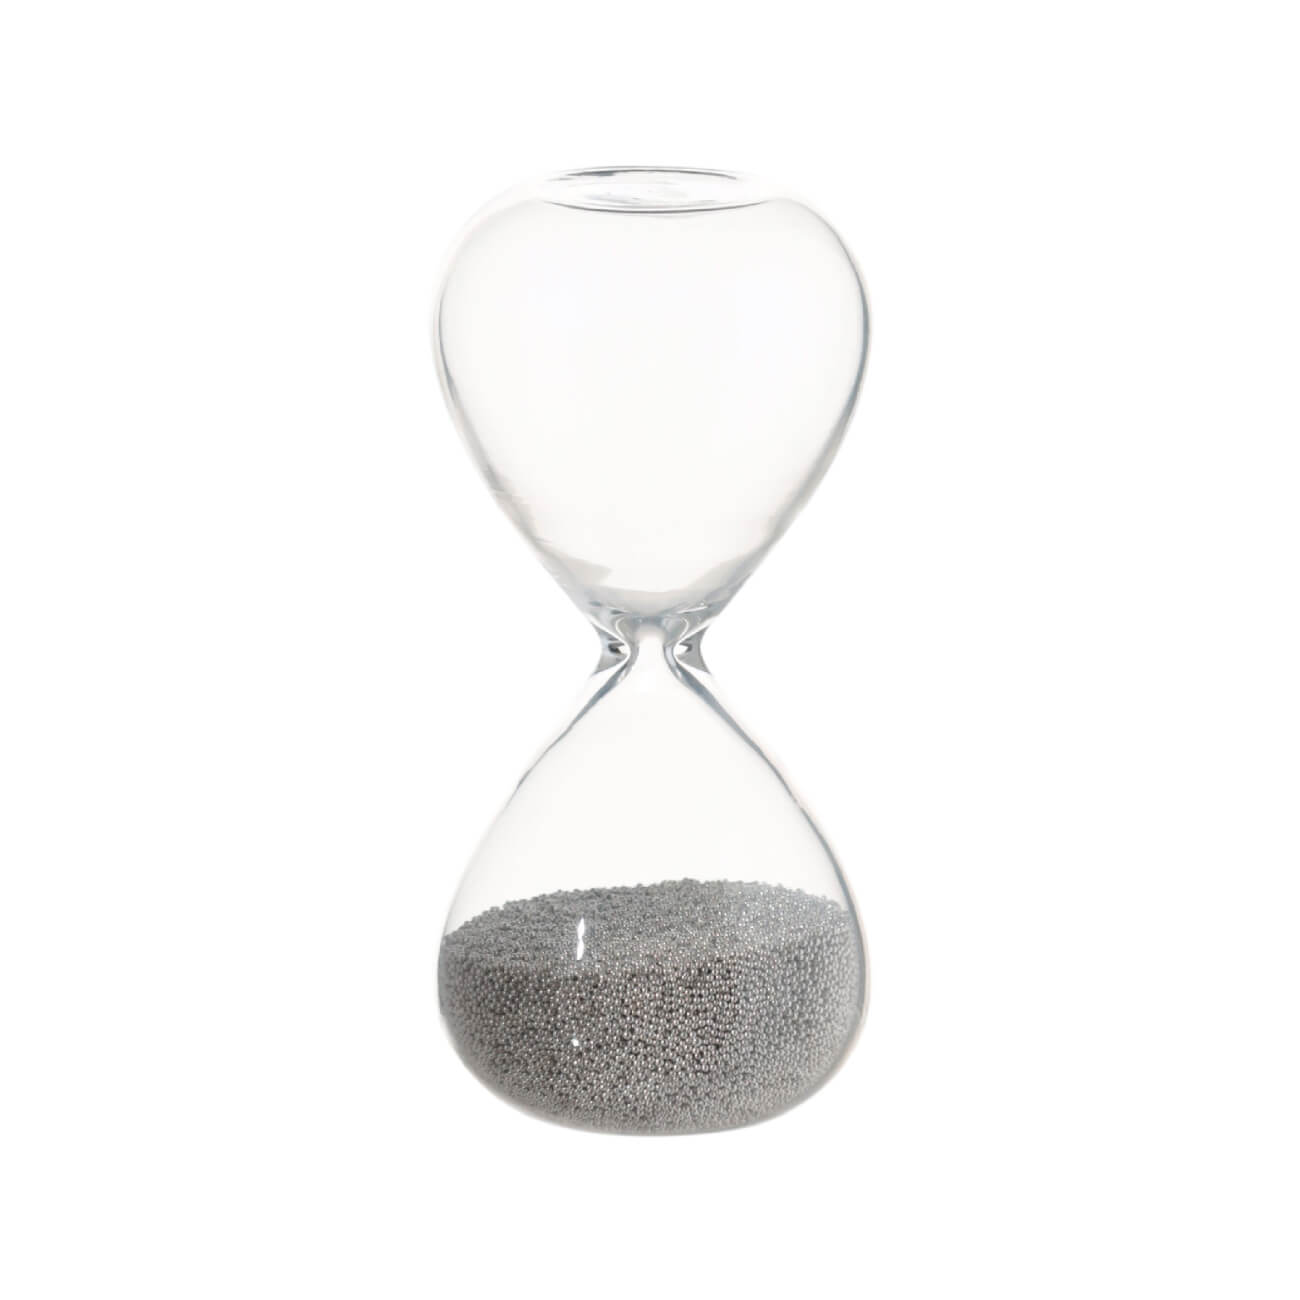 Часы песочные, 8 см, 30 секунд, стекло/песок, Sand time - фото 1